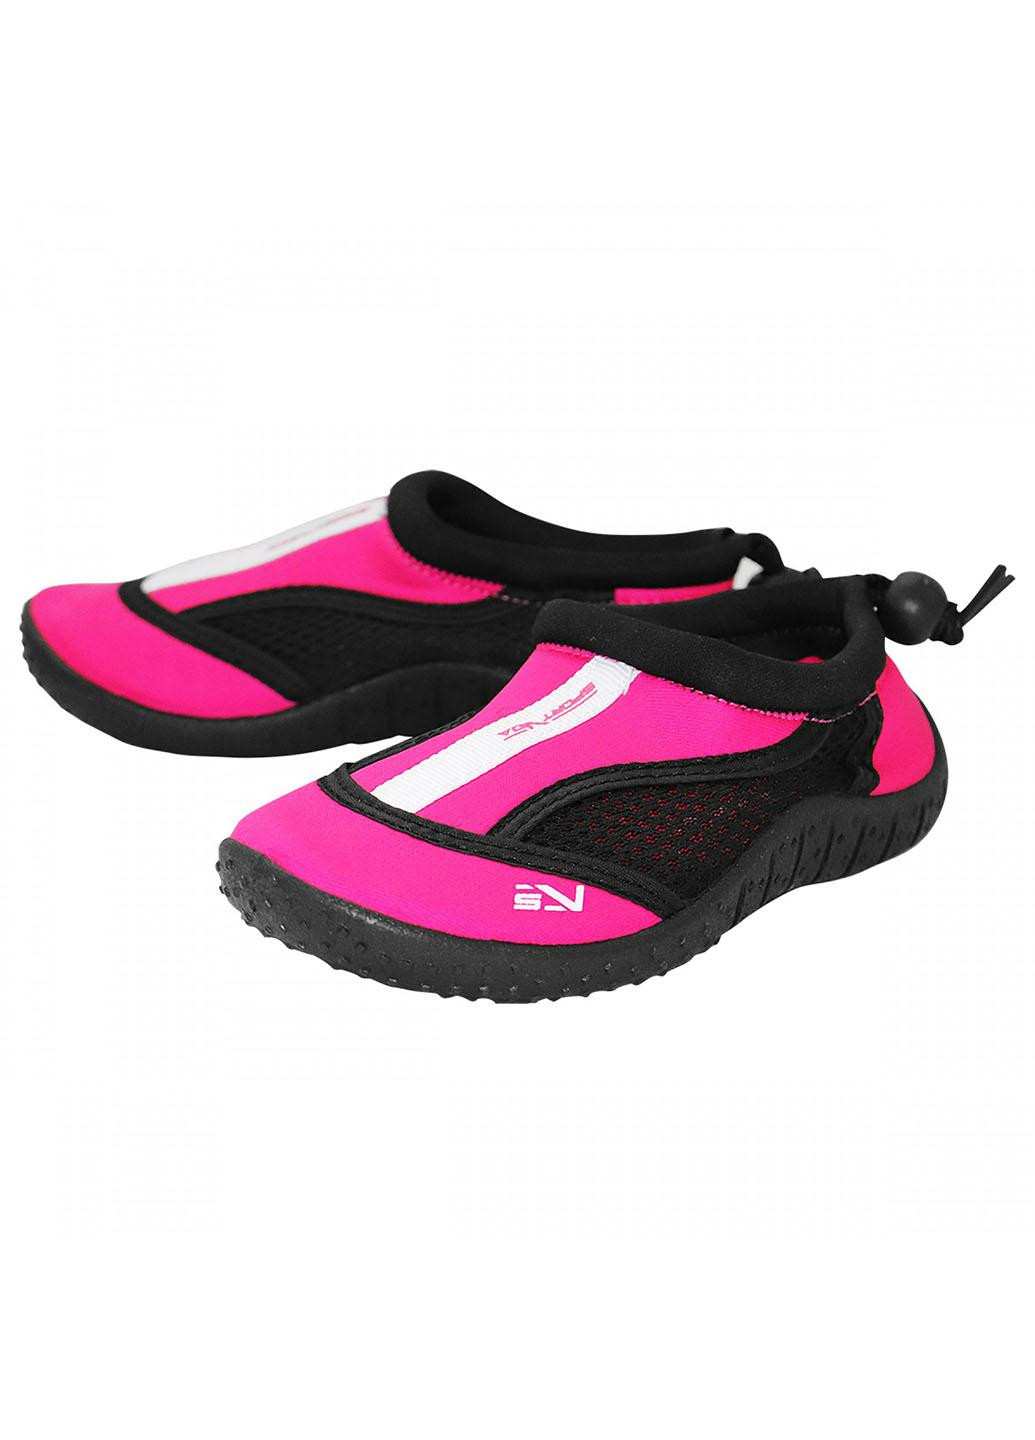 Обувь для пляжа и кораллов (аквашузы) SV-GY0001-R30 Size 30 Black/Pink SportVida (258486778)